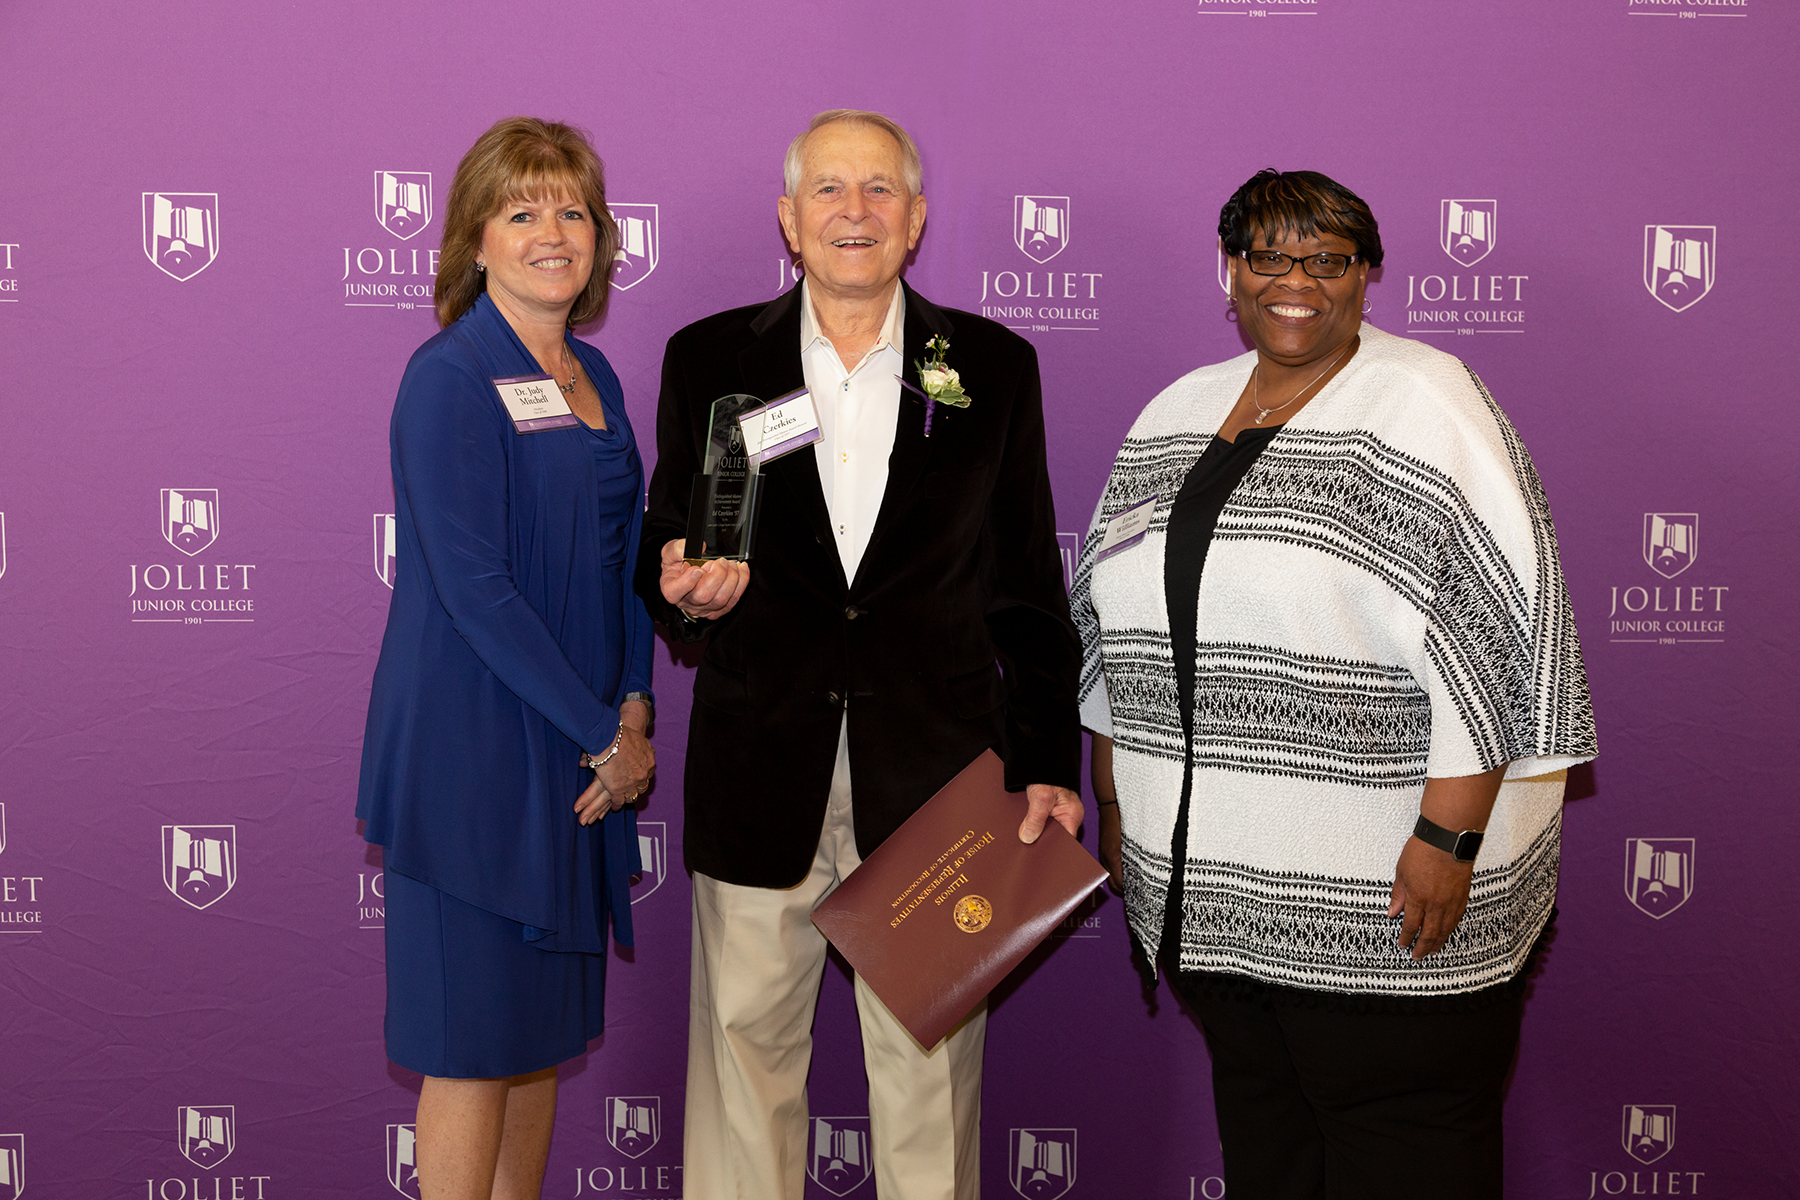 From left: JJC President Dr. Judy Mitchell, Ed Czerkies(Distinguished Alumni Achievement Award recipient), Alumni Board President Ericka Williams.